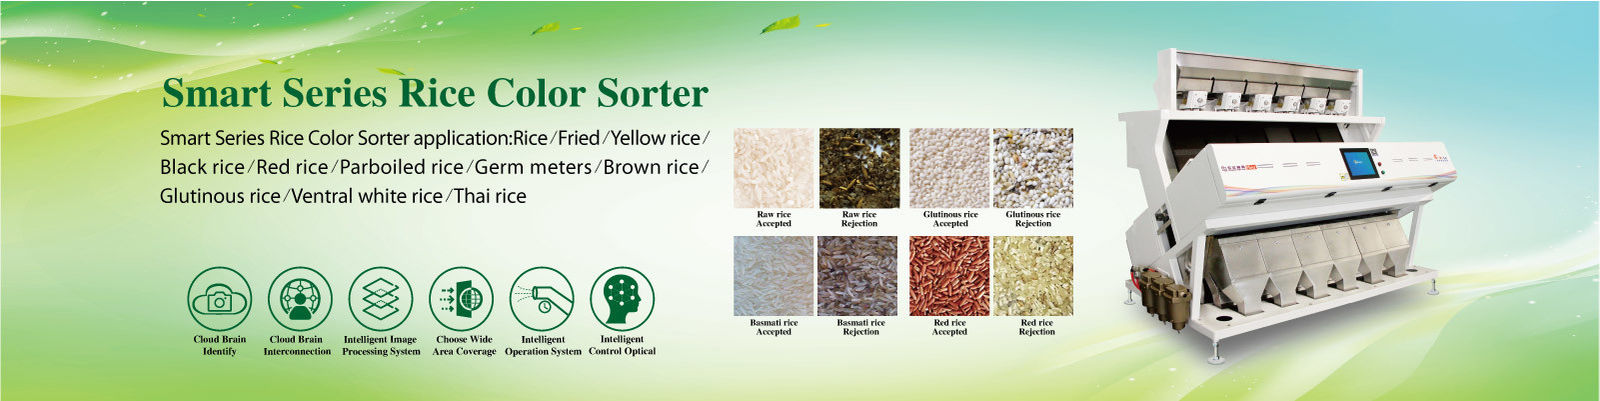 rijst kleur sorter